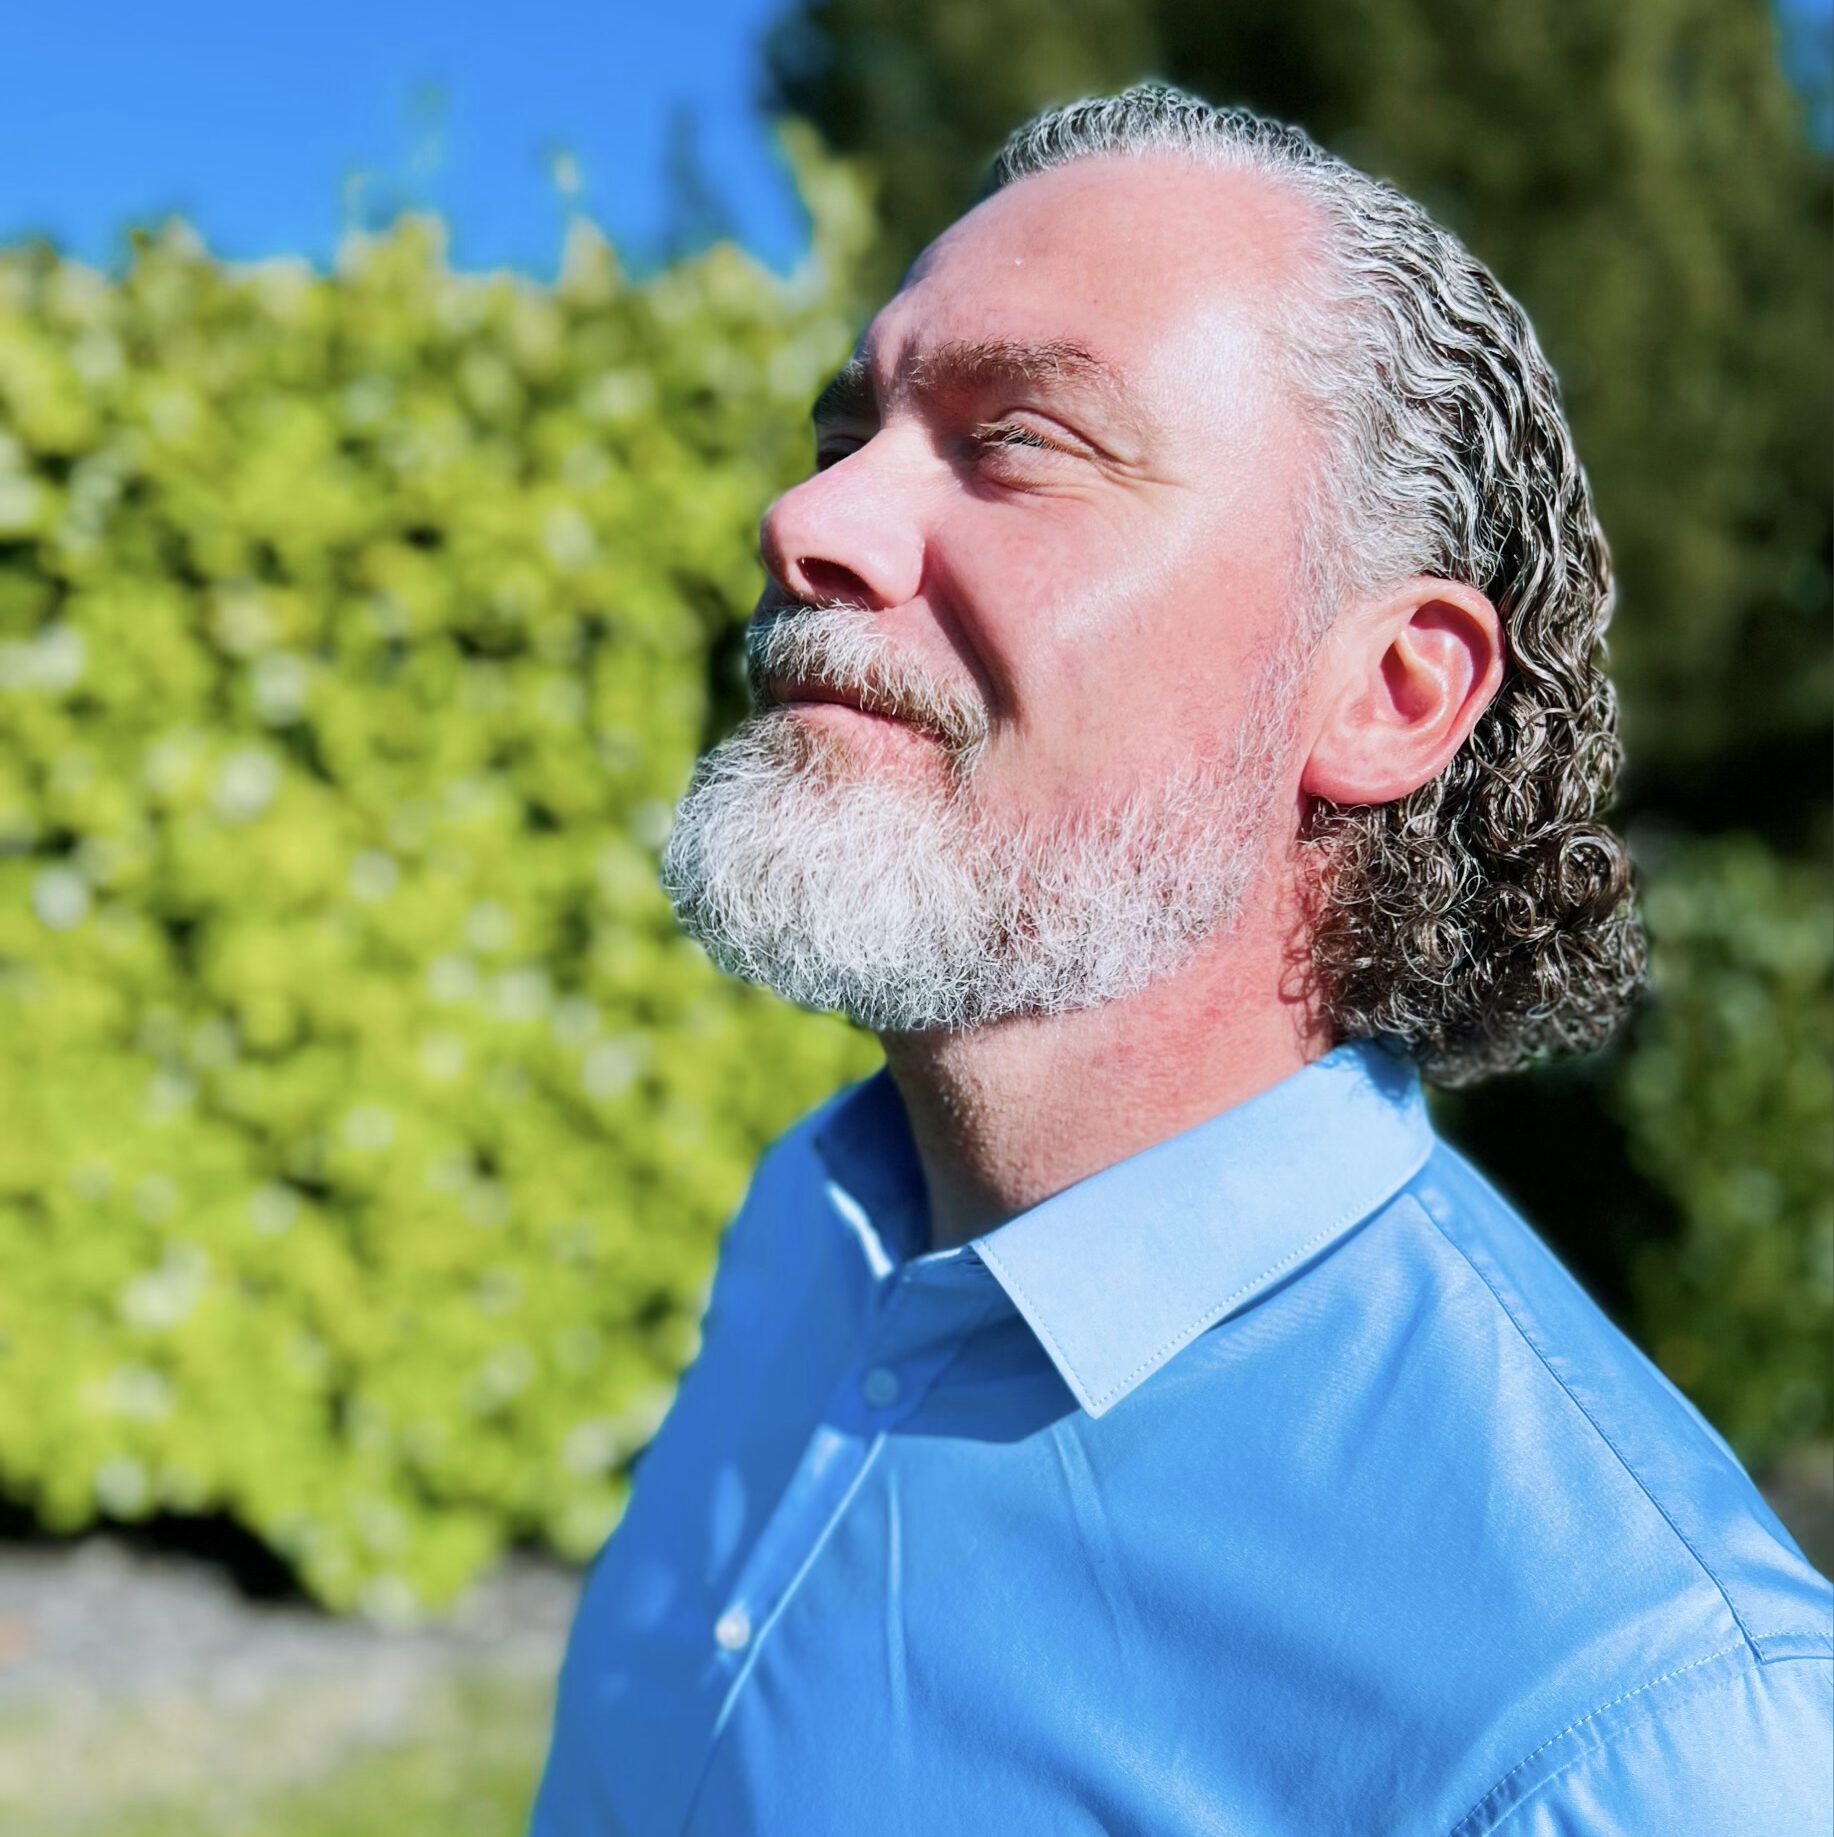 Ein Mann mit blauem Hemd, schaut mit einem Grinsen im Gesicht in den Himmel. Mit der Sonne im Gesicht entspannt er sich beim gehen.

#Psychologische Beratung in Ratingen #Coaching #Autogenestraining #ProgressiveMuskelentspannung #Entspannungspädagogin #Entspannung #RamonaWegener #Ratingen #Entspannungfürkinder
#Coachingimgehen 